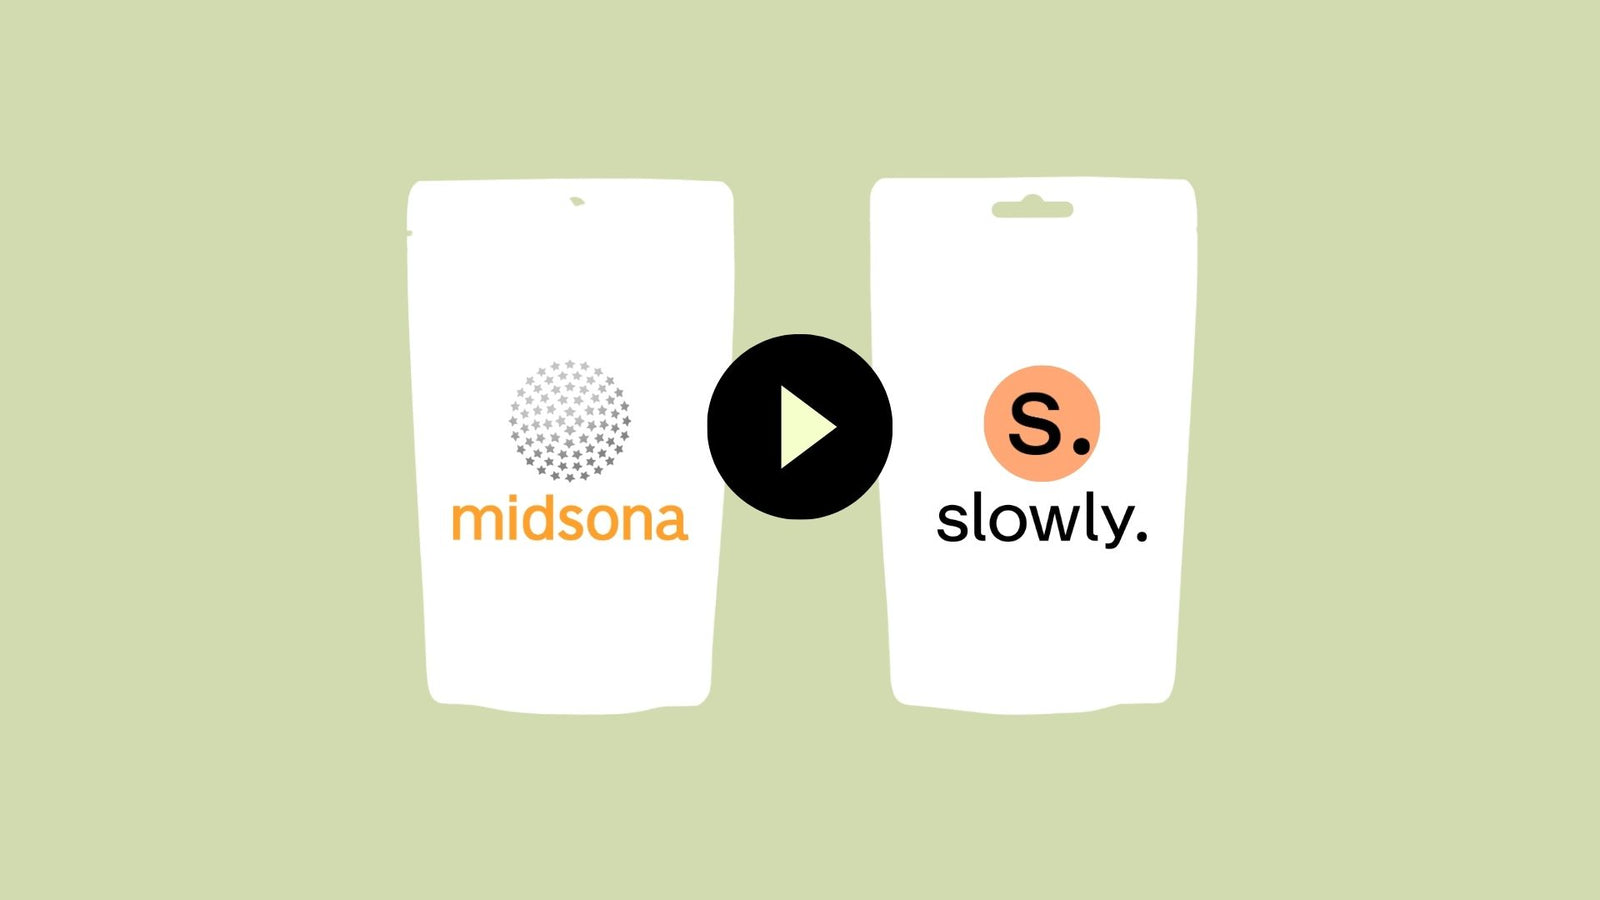 slowly midsona partnership illustration